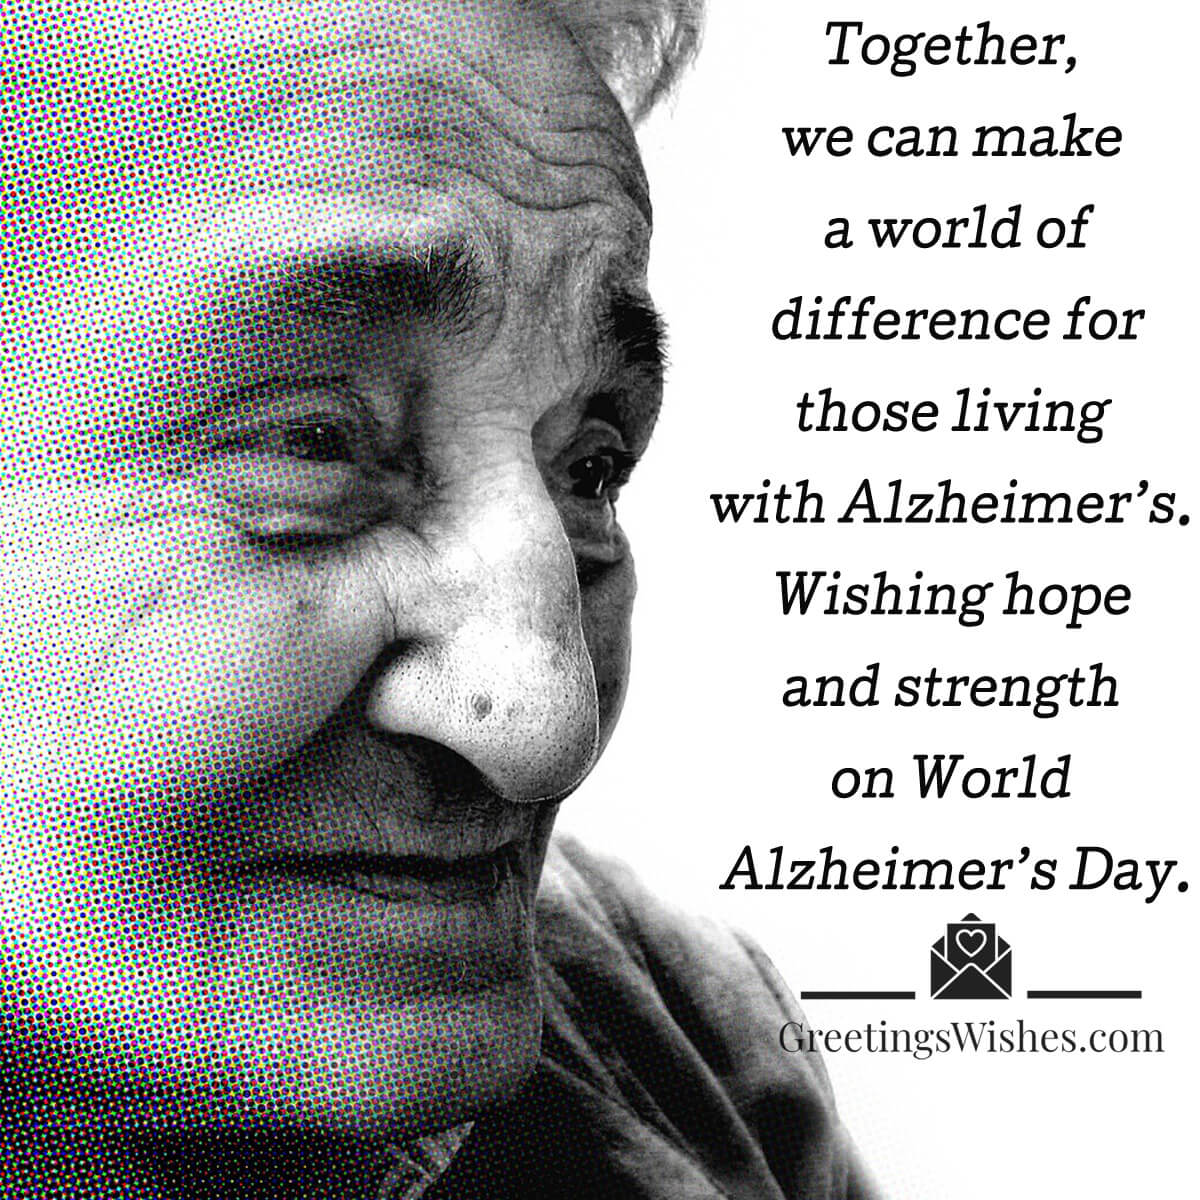 World Alzheimer’s Day Greetings